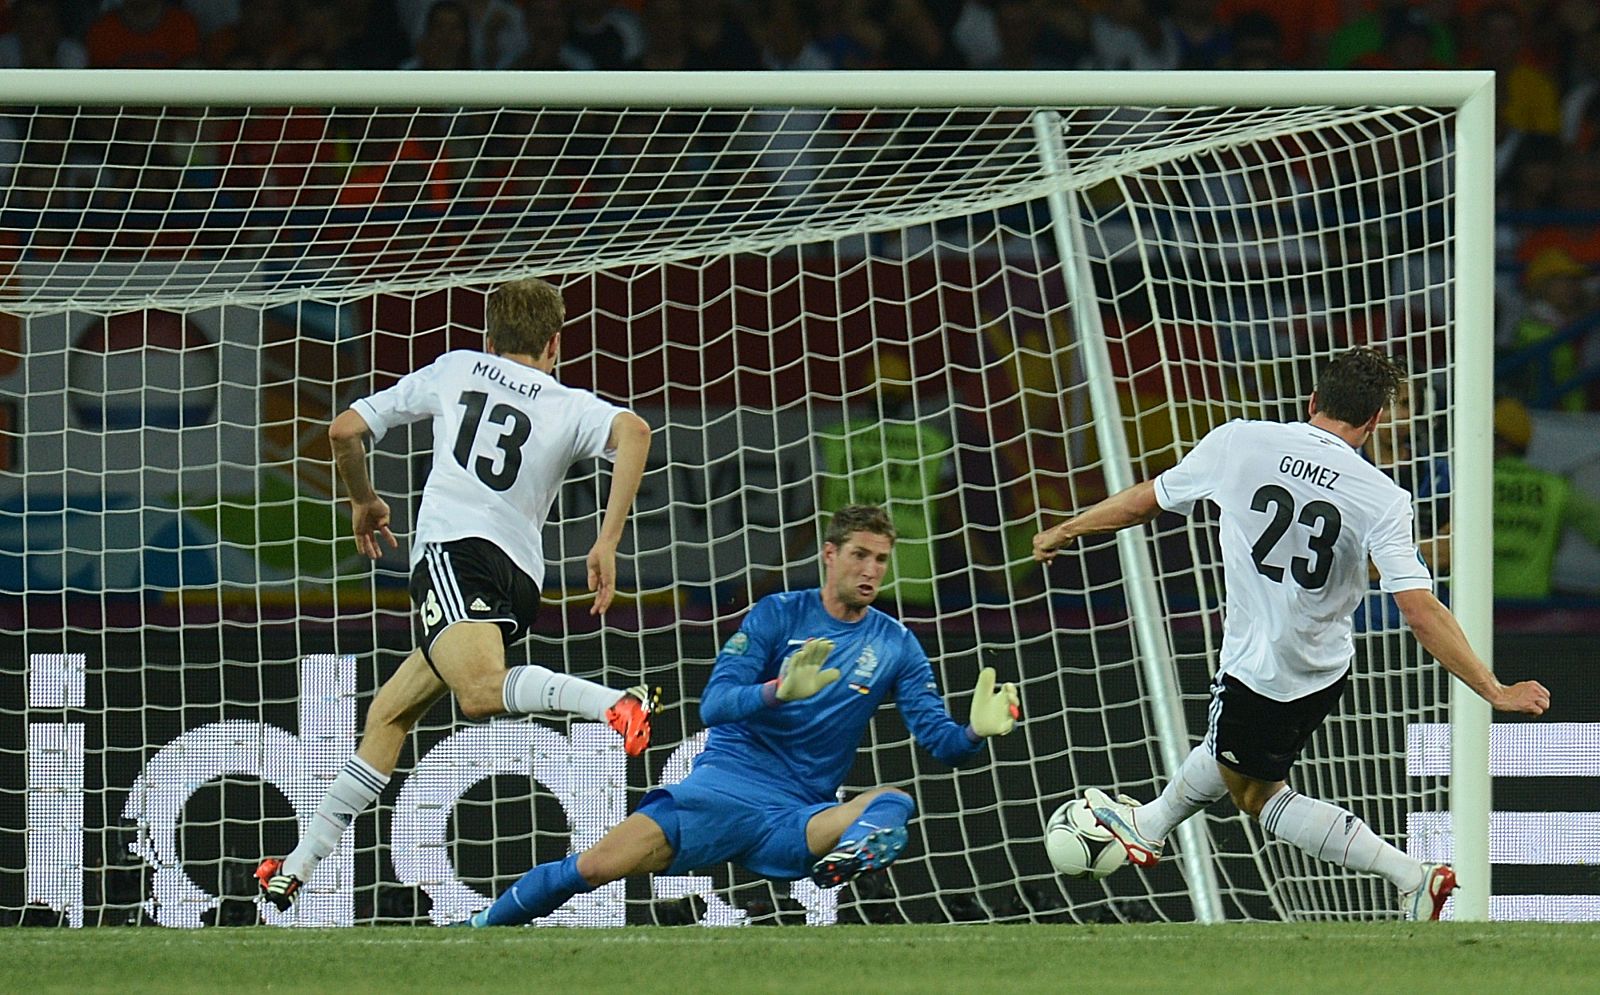 Mario Gomez marca en el Alemania - Holanda de la Eurocopa